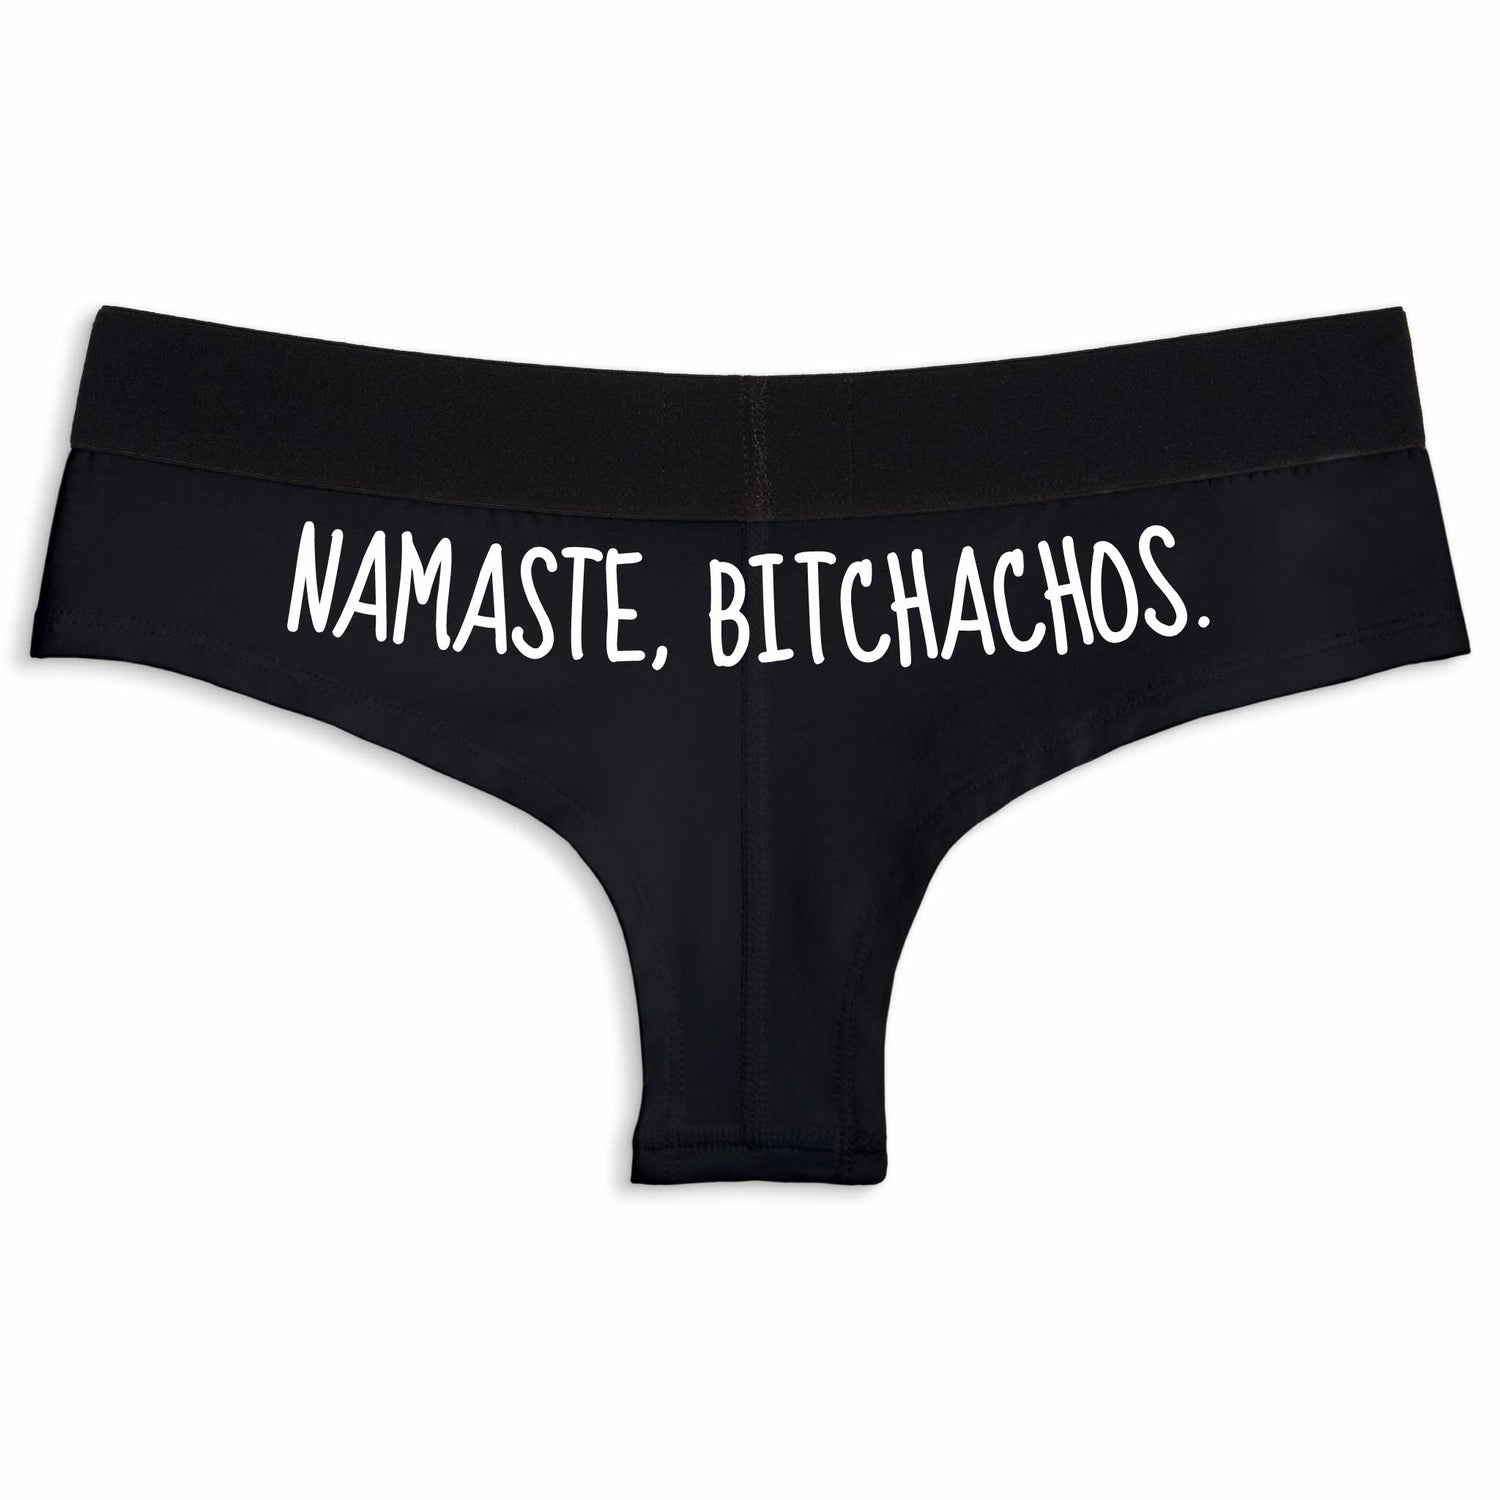 Namaste, Bitchachos. | Cheeky underwear